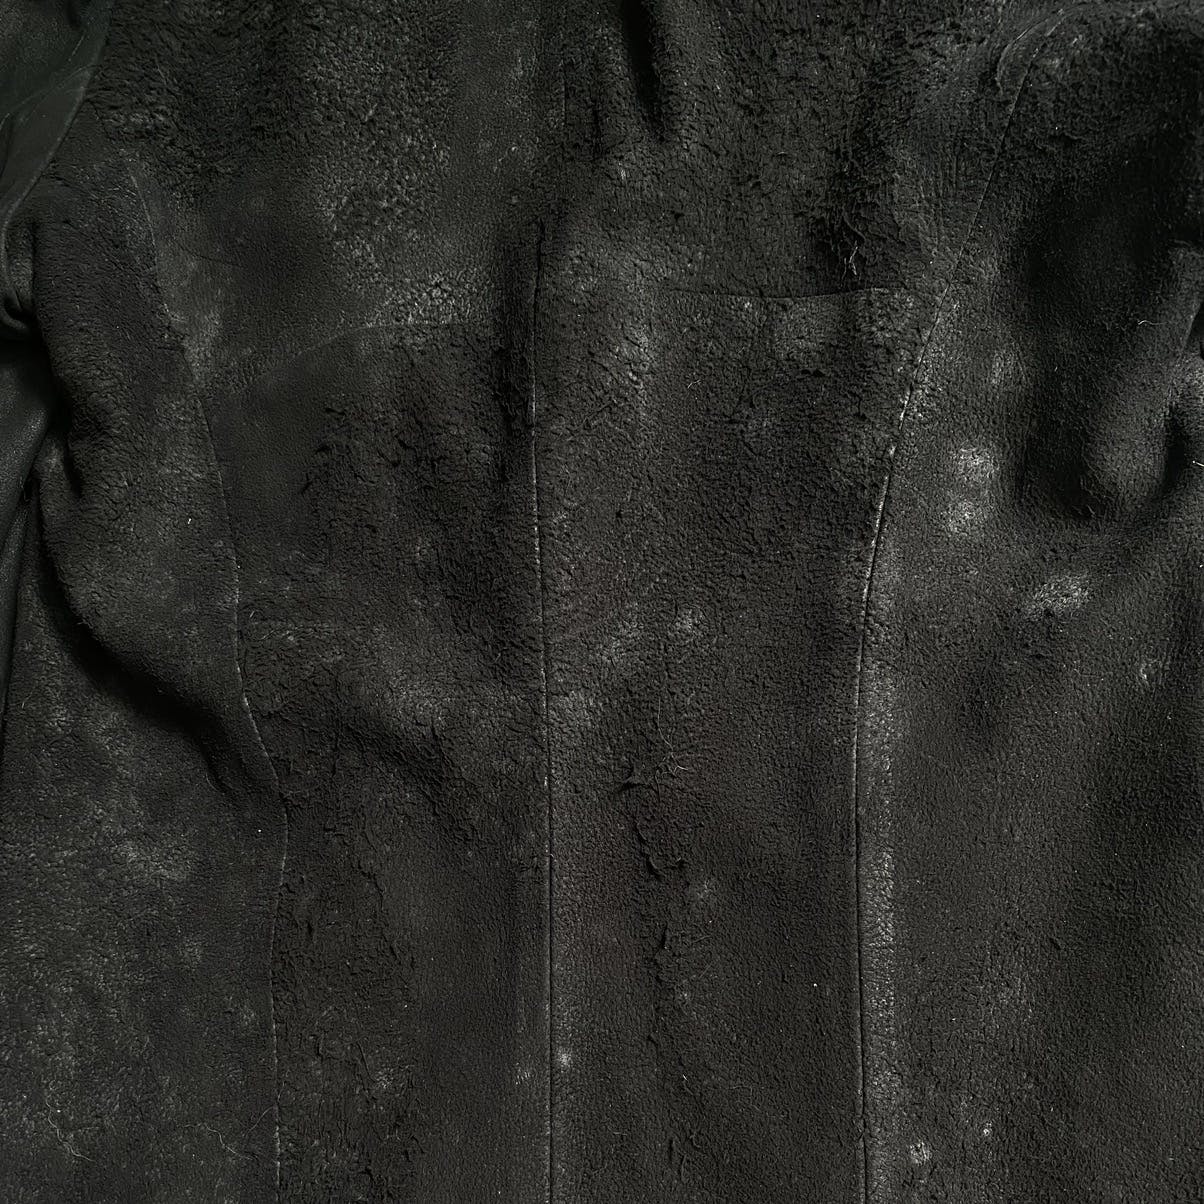 FW13-14 “Crack” Leather Jacket - 5